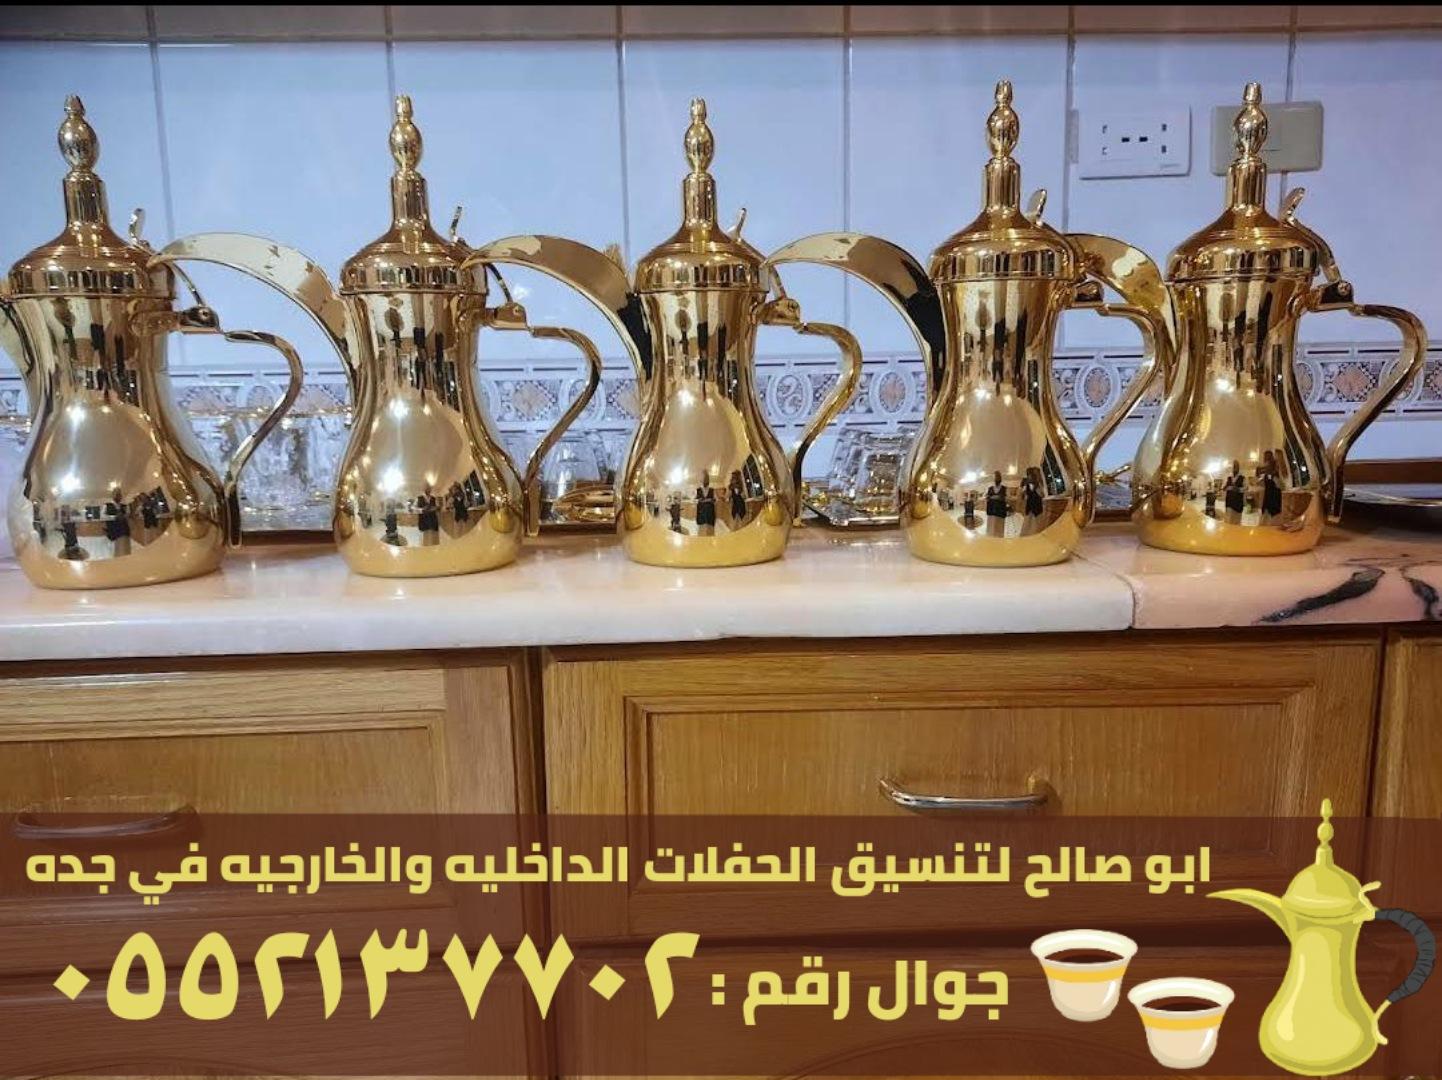 قهوجيين للضيافه ومباشرين قهوة في جدة,0552137702 528565124